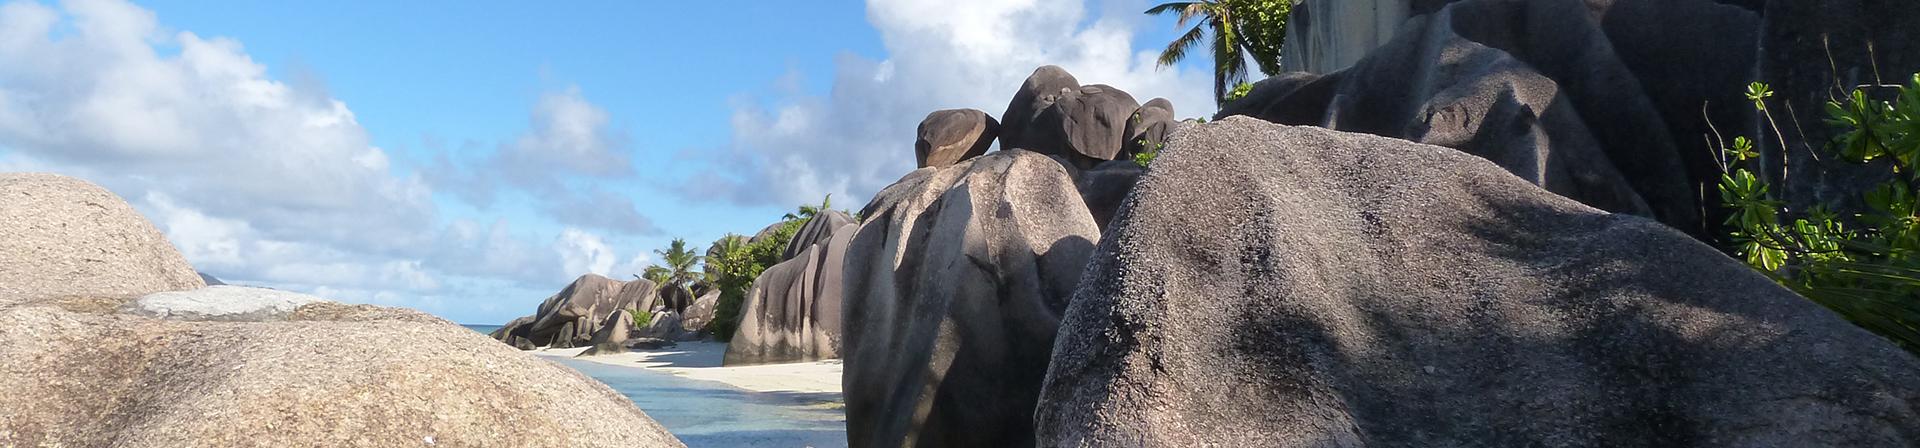 Granitfelsen auf den Seychellen, Inselparadies im Indischen Ozean